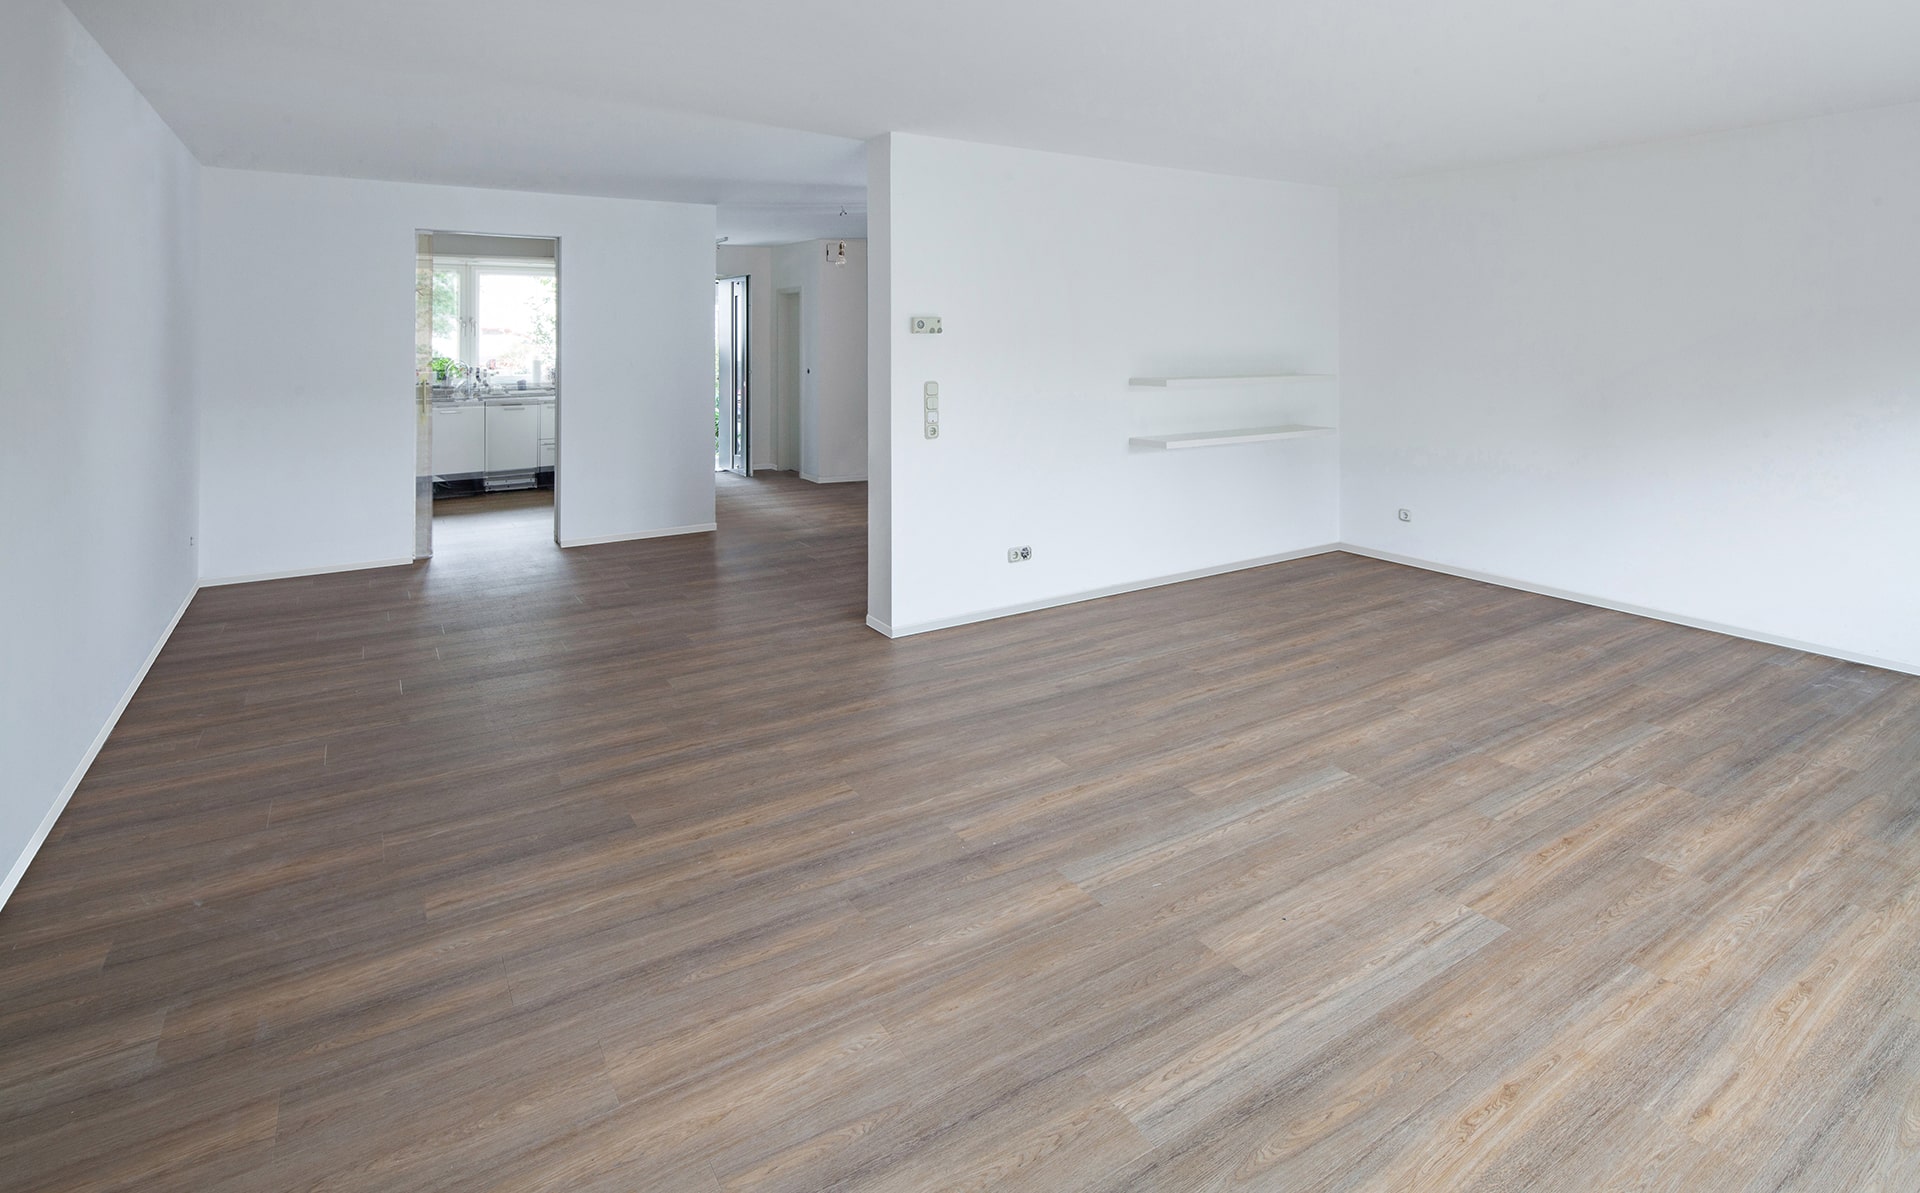 Ein leerer Raum mit Holzböden und weißen Wänden.